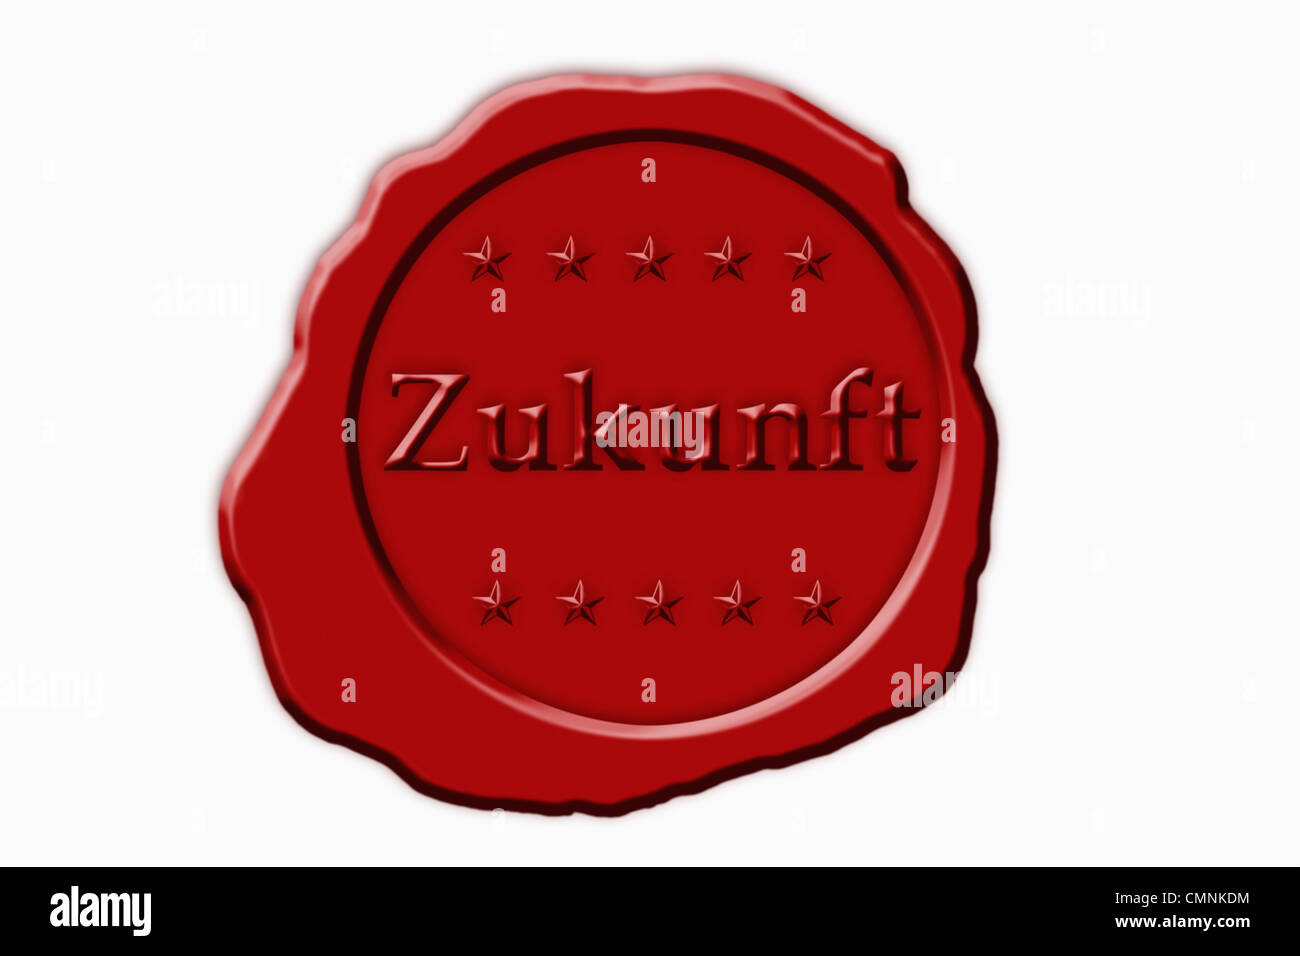 Detailansicht eines roten Siegels mit der Aufschrift Zukunft | Dettaglio foto di un sigillo rosso con la scritta in tedesco futuro Foto Stock